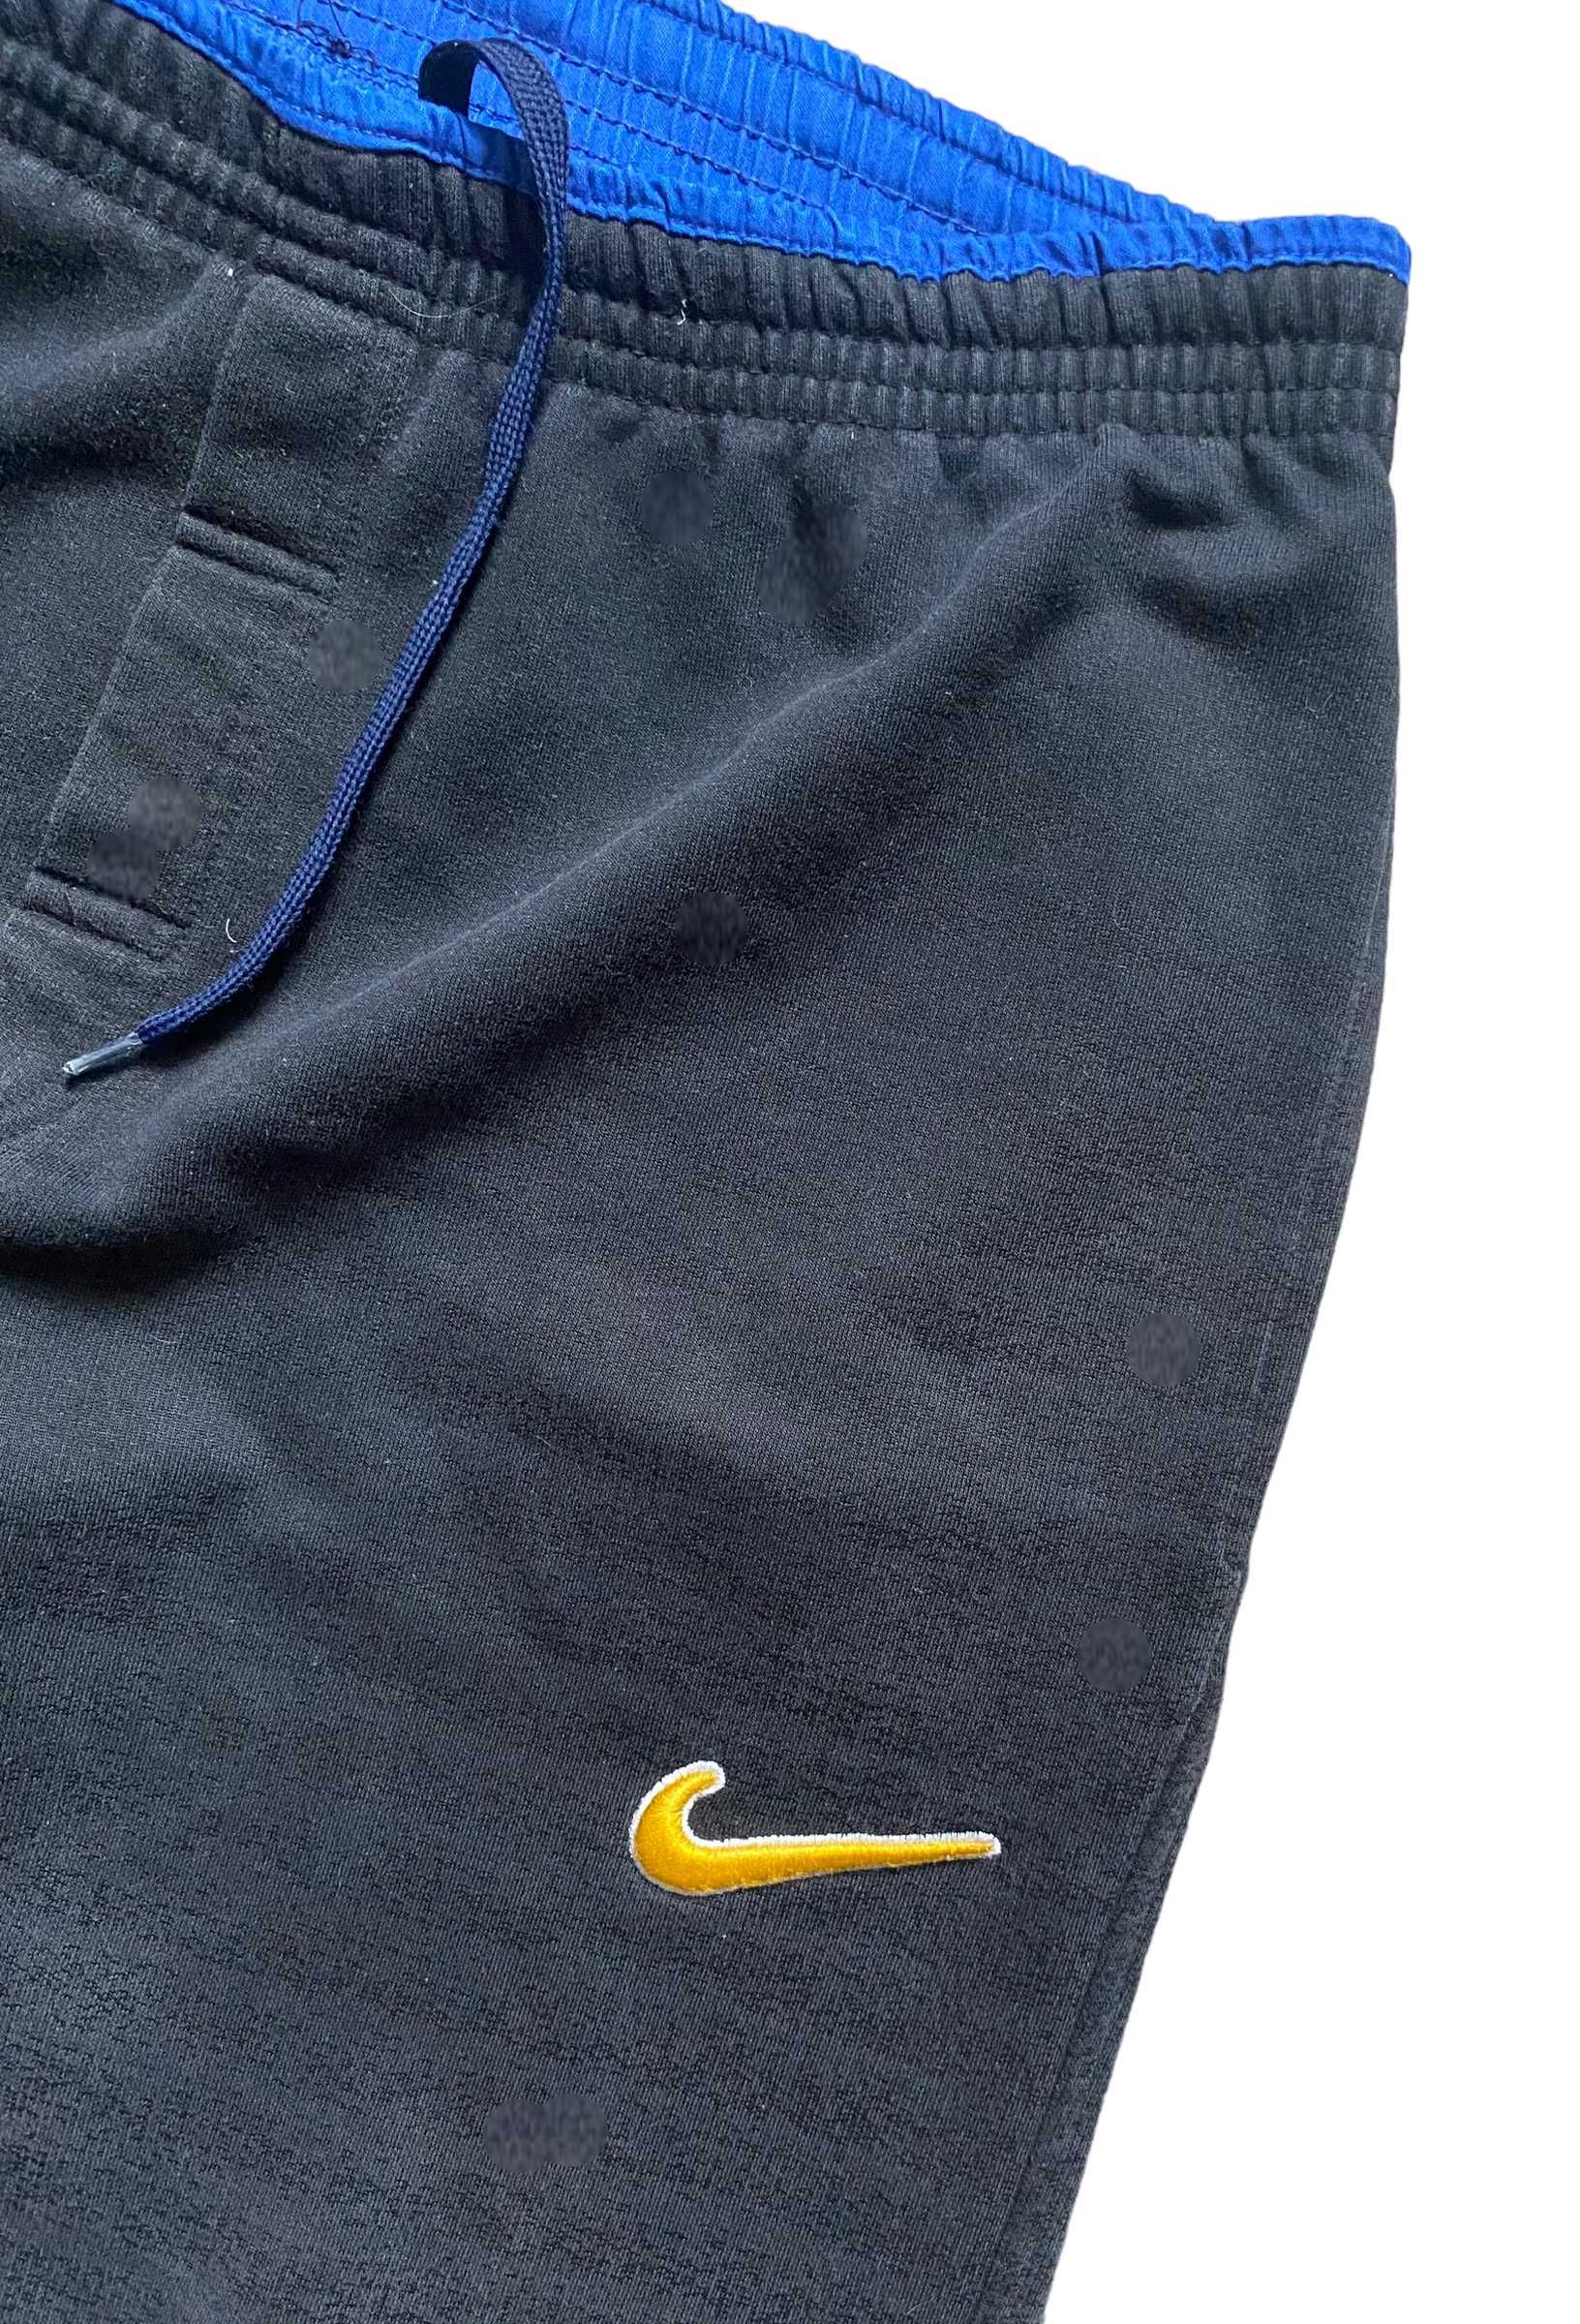 Nike 90s' vintage spodnie dresowe, rozmiar L, stan bardzo dobry